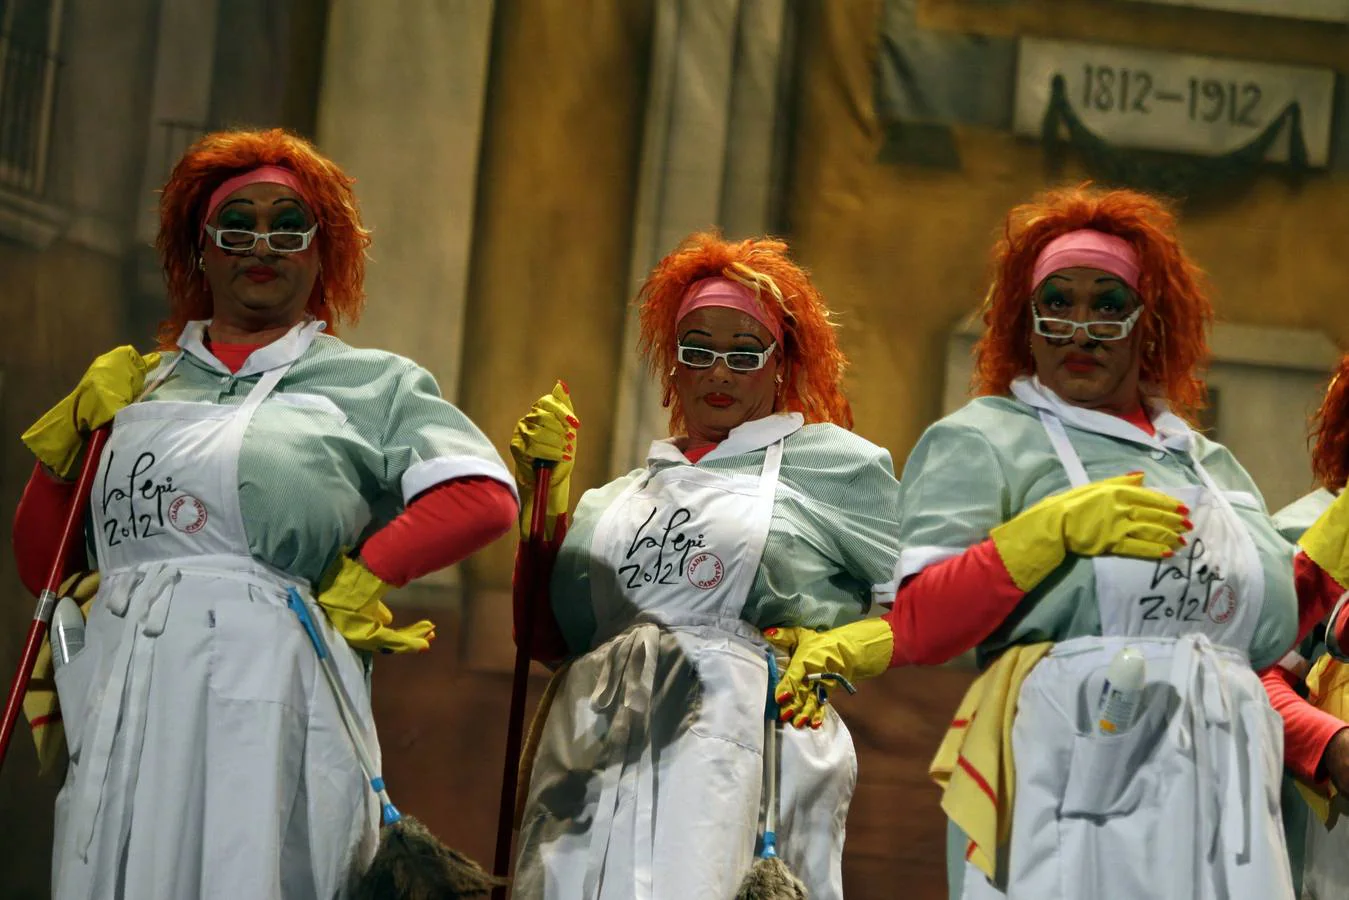 La celebración del 2012 marcó este Carnaval; en la imagen, la chirigota de Selu García Cossío 'Viva la Pepi'.